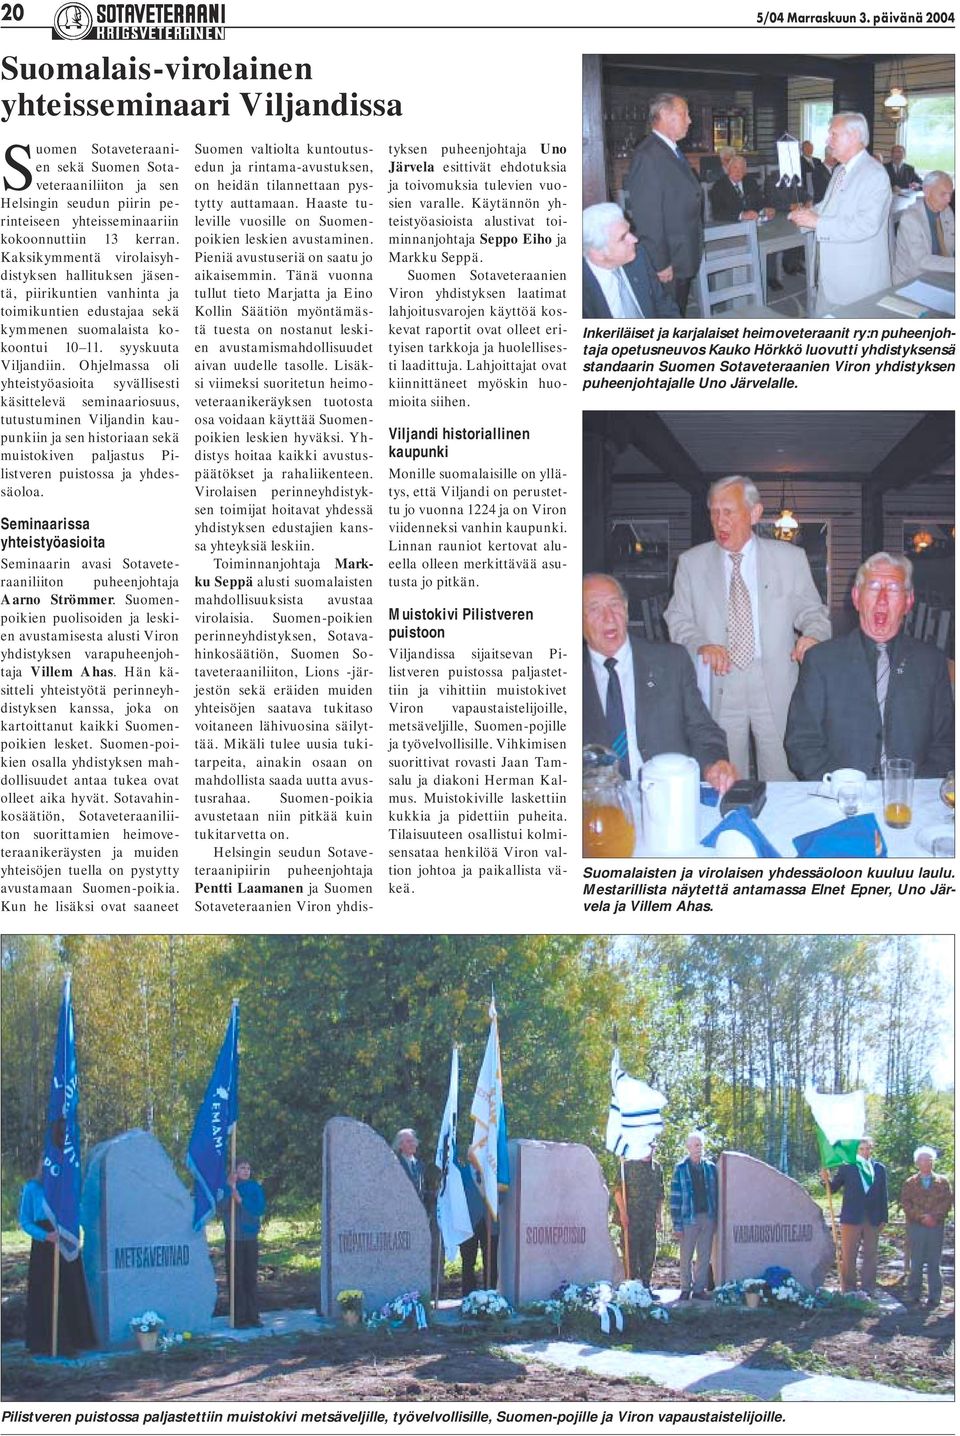 kerran. Kaksikymmentä virolaisyhdistyksen hallituksen jäsentä, piirikuntien vanhinta ja toimikuntien edustajaa sekä kymmenen suomalaista kokoontui 10 11. syyskuuta Viljandiin.